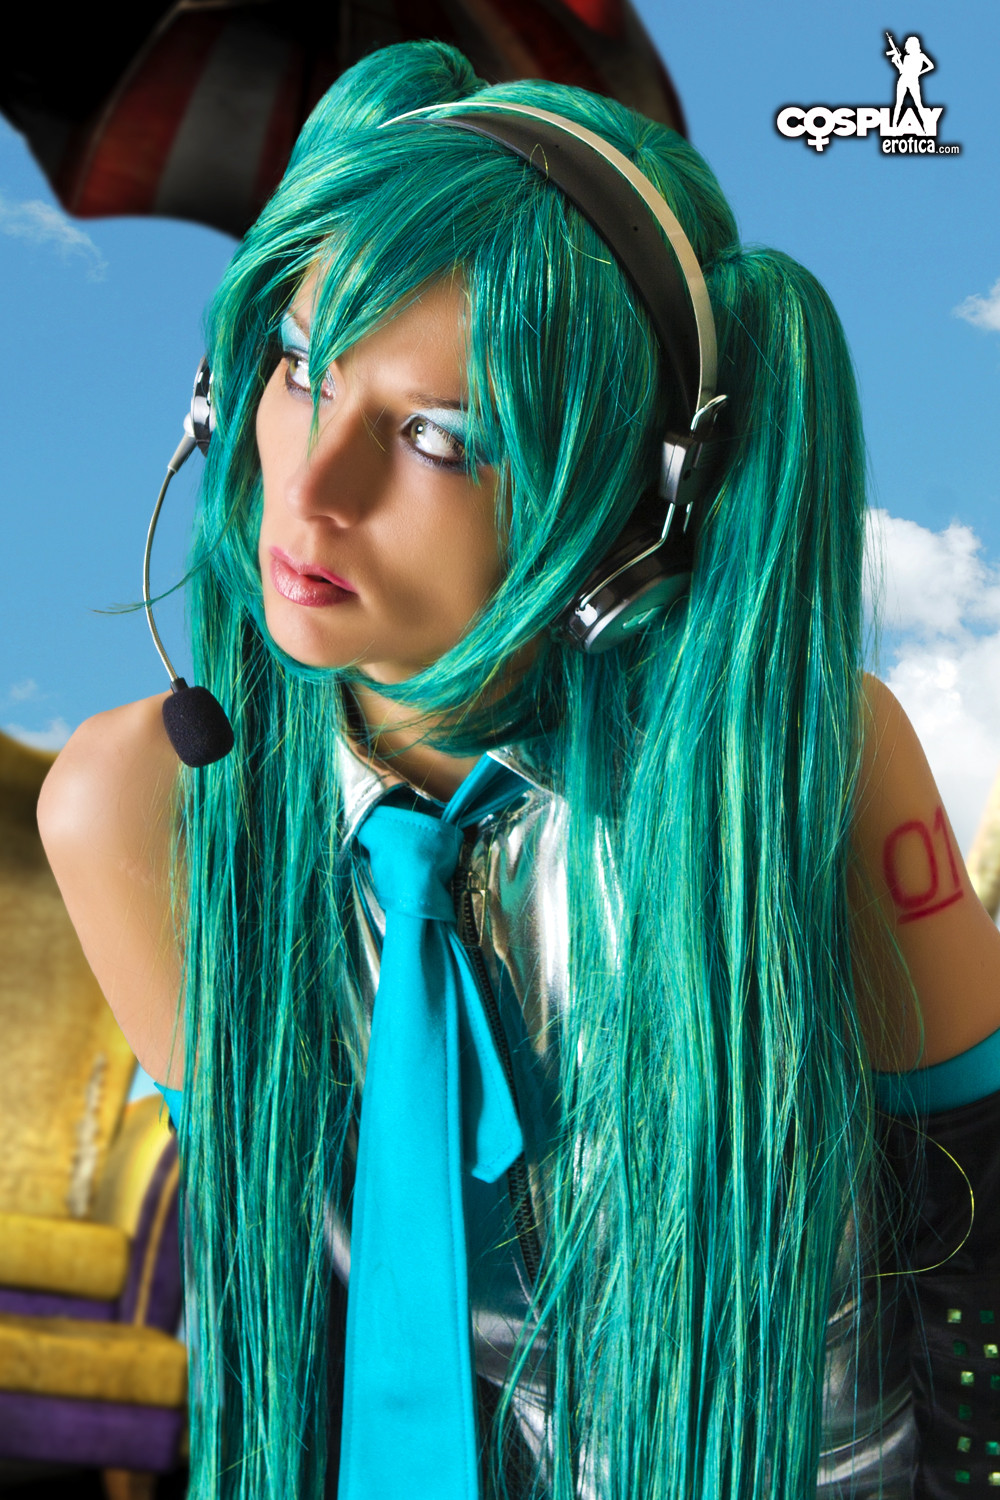 Erotisches Cosplay Lana in langer grüner Perücke und Anime-Uniform
 #67371453